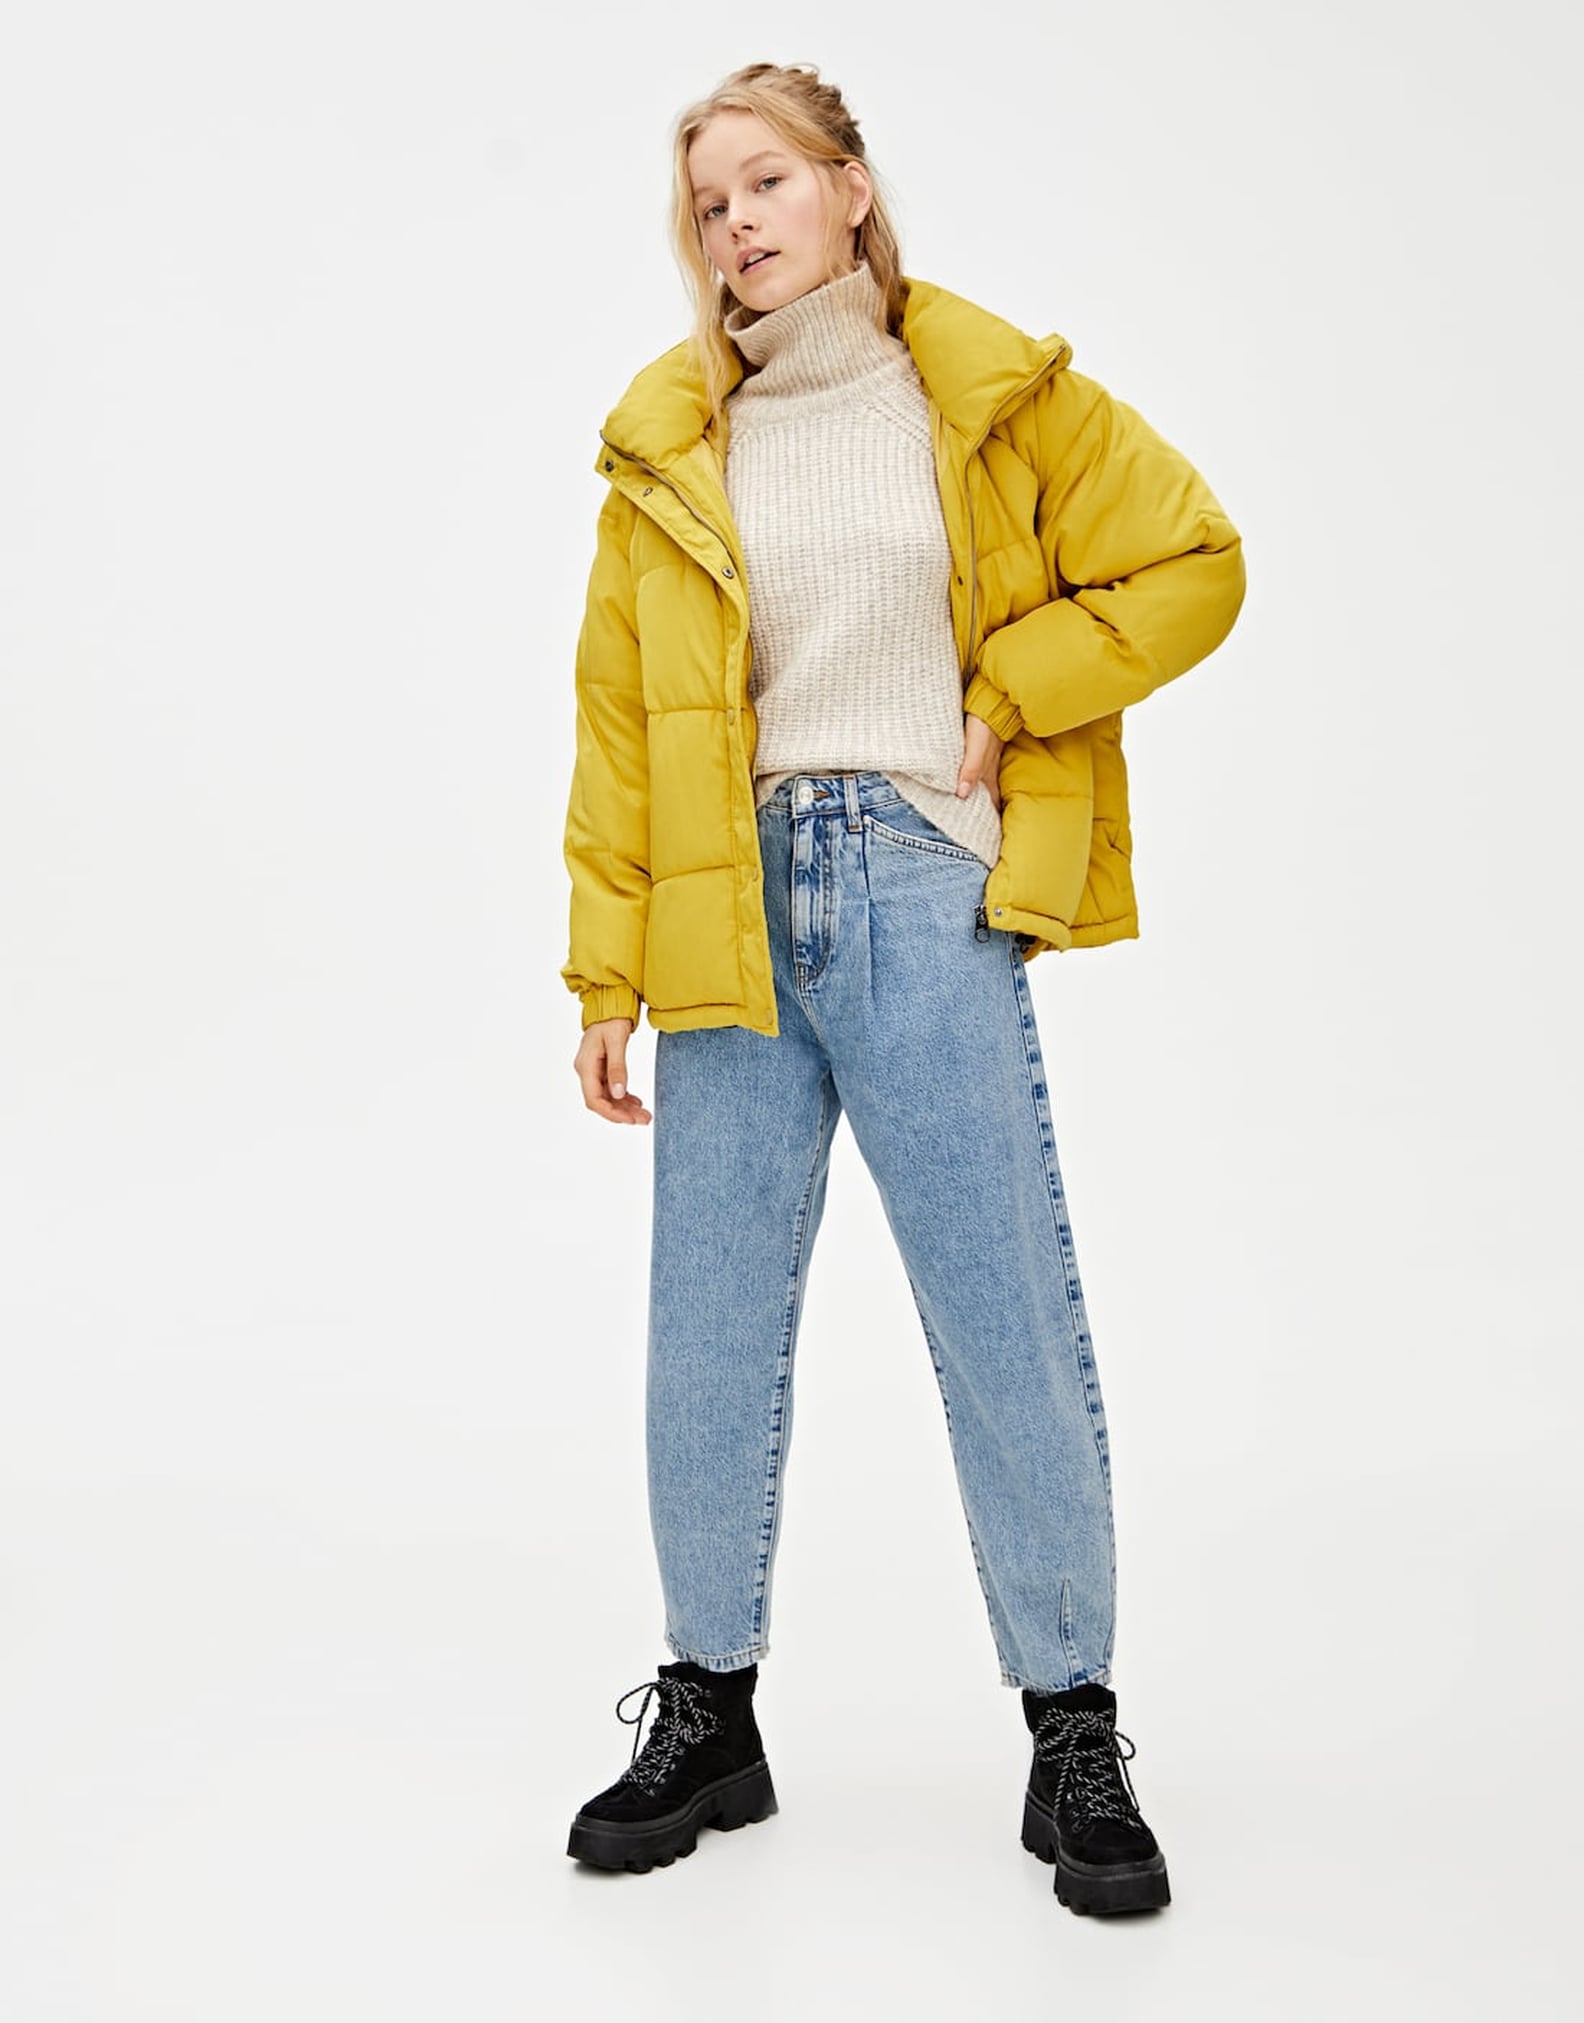 How to Wear a Puffer Jacket the Billie Eilish Way | POPSUGAR Fashion